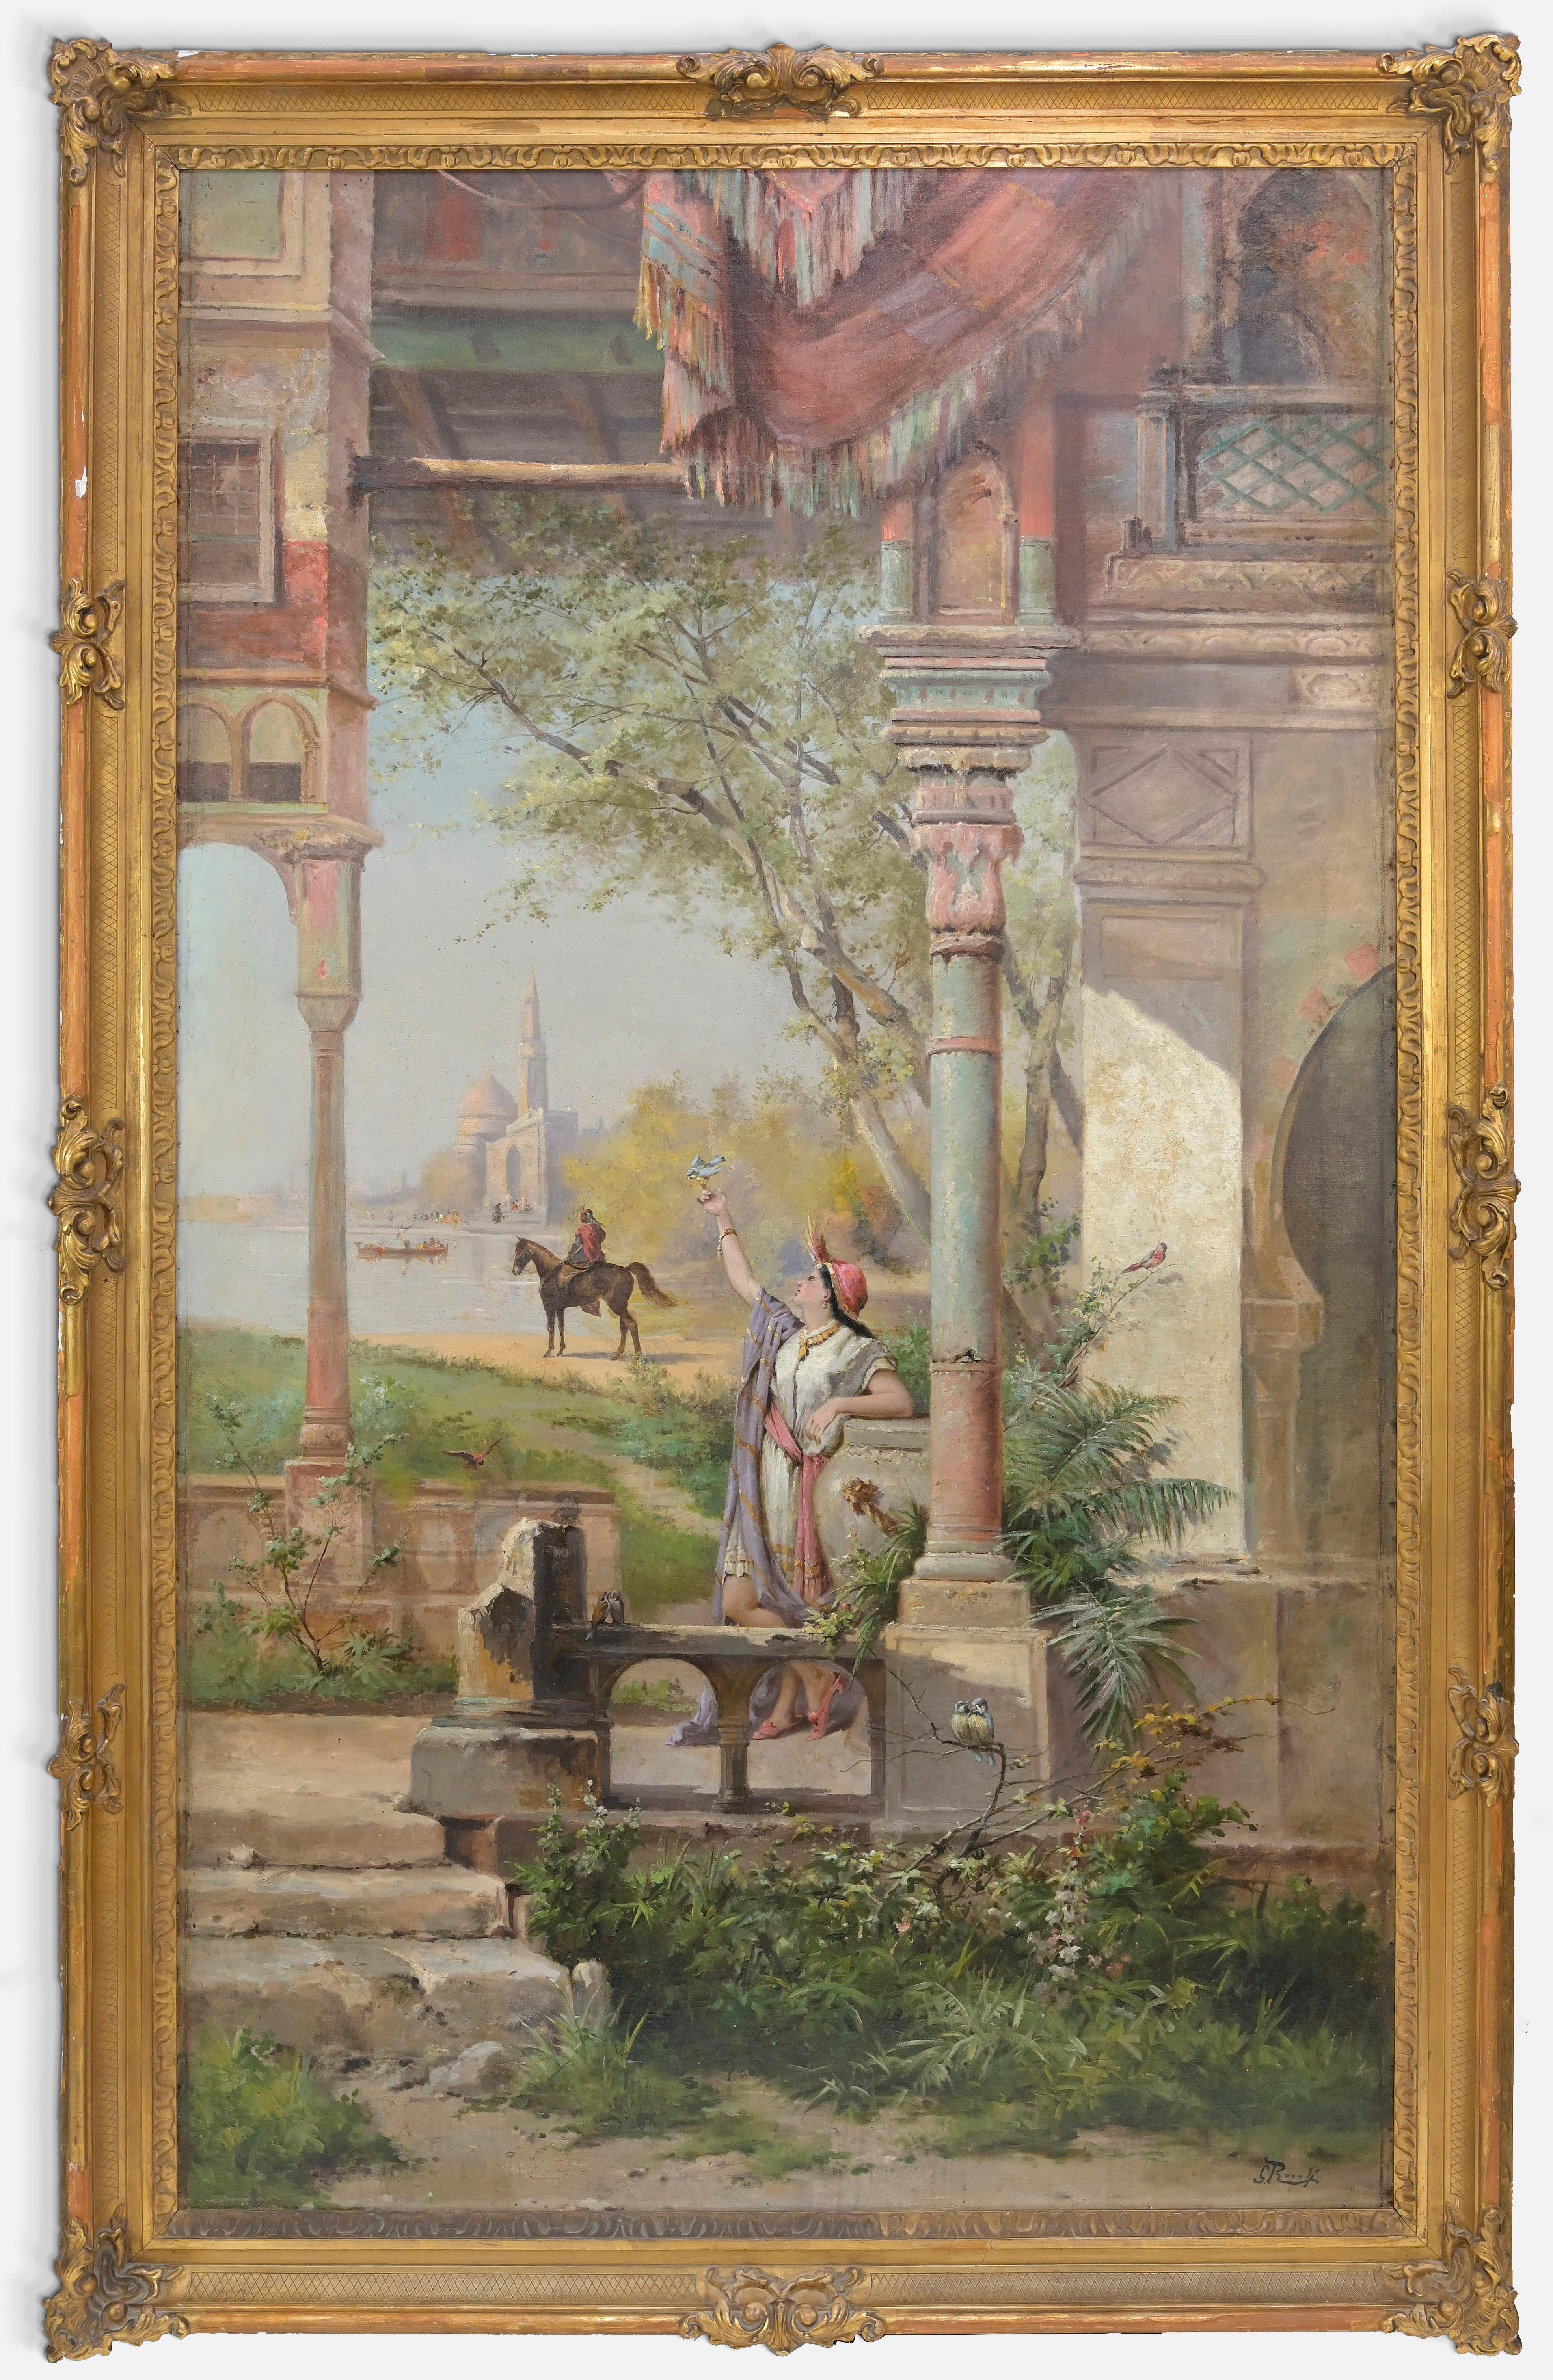 Orientalische Szene ist ein orientalistisches Kunstwerk von Giulio Rosati (1857 - 1917).

Das Kunstwerk zeigt einen orientalischen Palast mit Dame und Reiterin in einer Landschaft.

Gemischtes farbiges Öl auf Leinwand.

Rechts unten